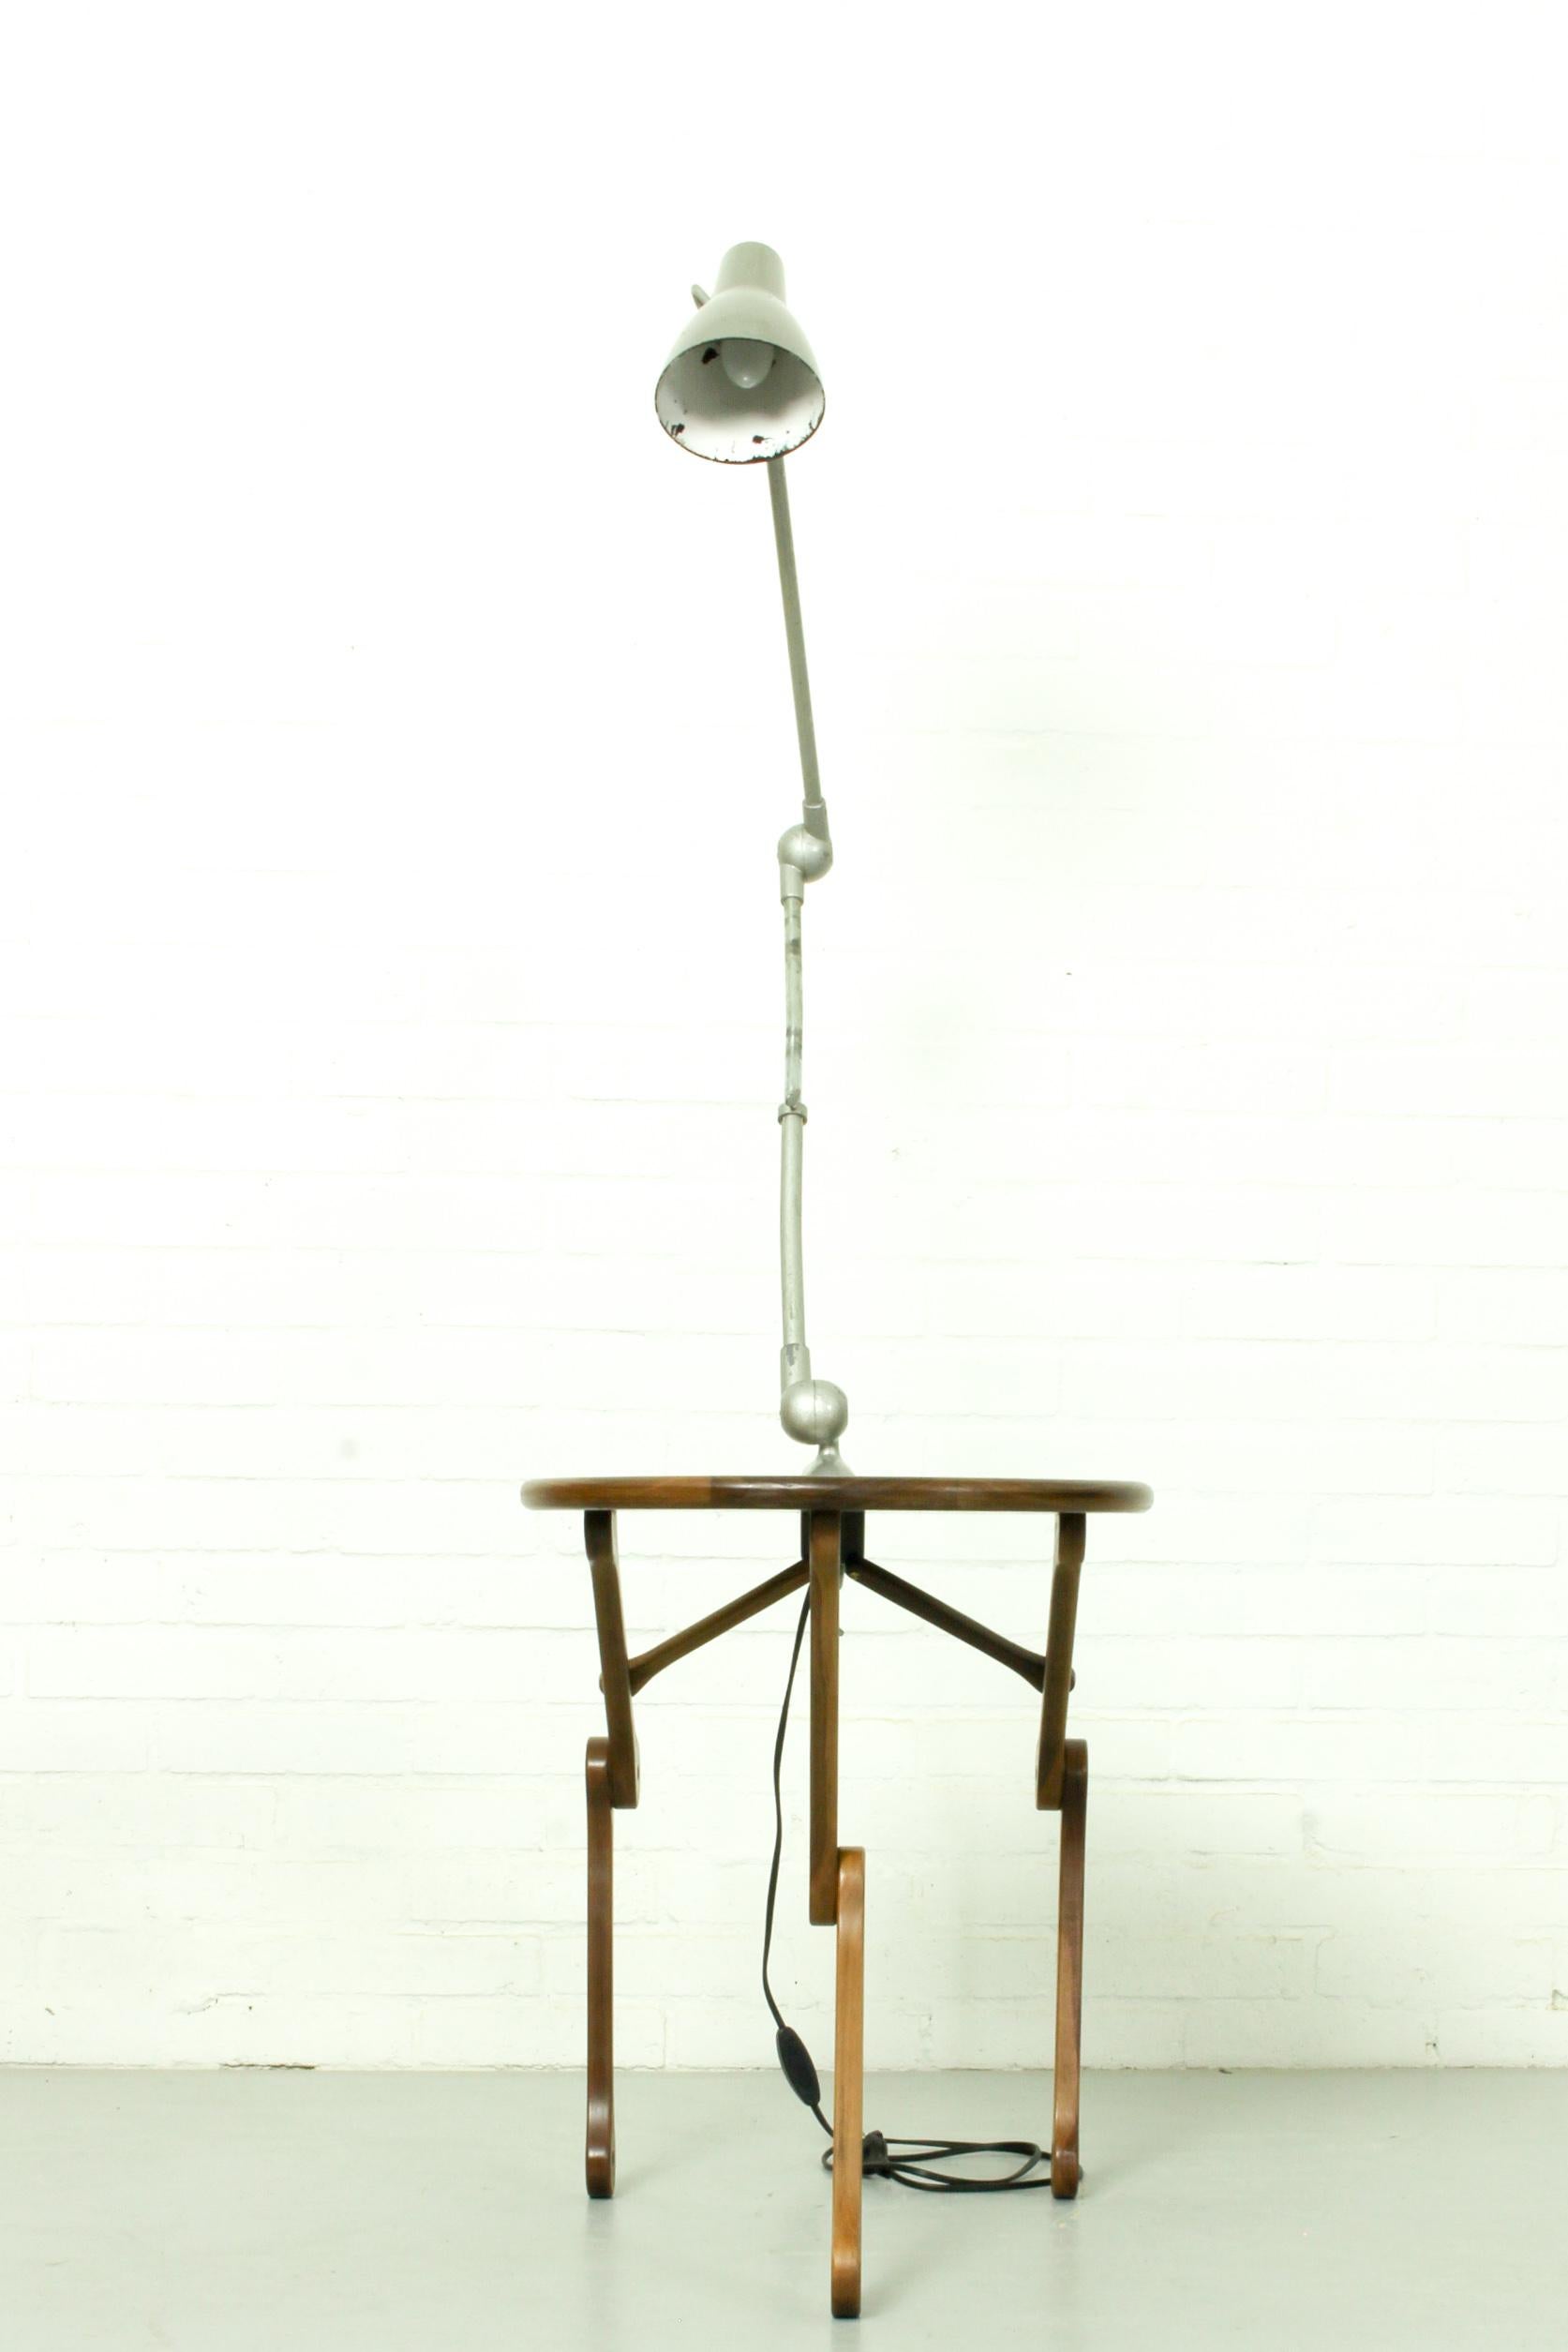 Lampe de table de style robotique industriel cool et funky. La lampe est dotée d'un pied en forme de noix américaine, fabriqué à la main, avec une table attachée, ce qui permet de l'utiliser comme lampadaire. La lampe elle-même est française et a